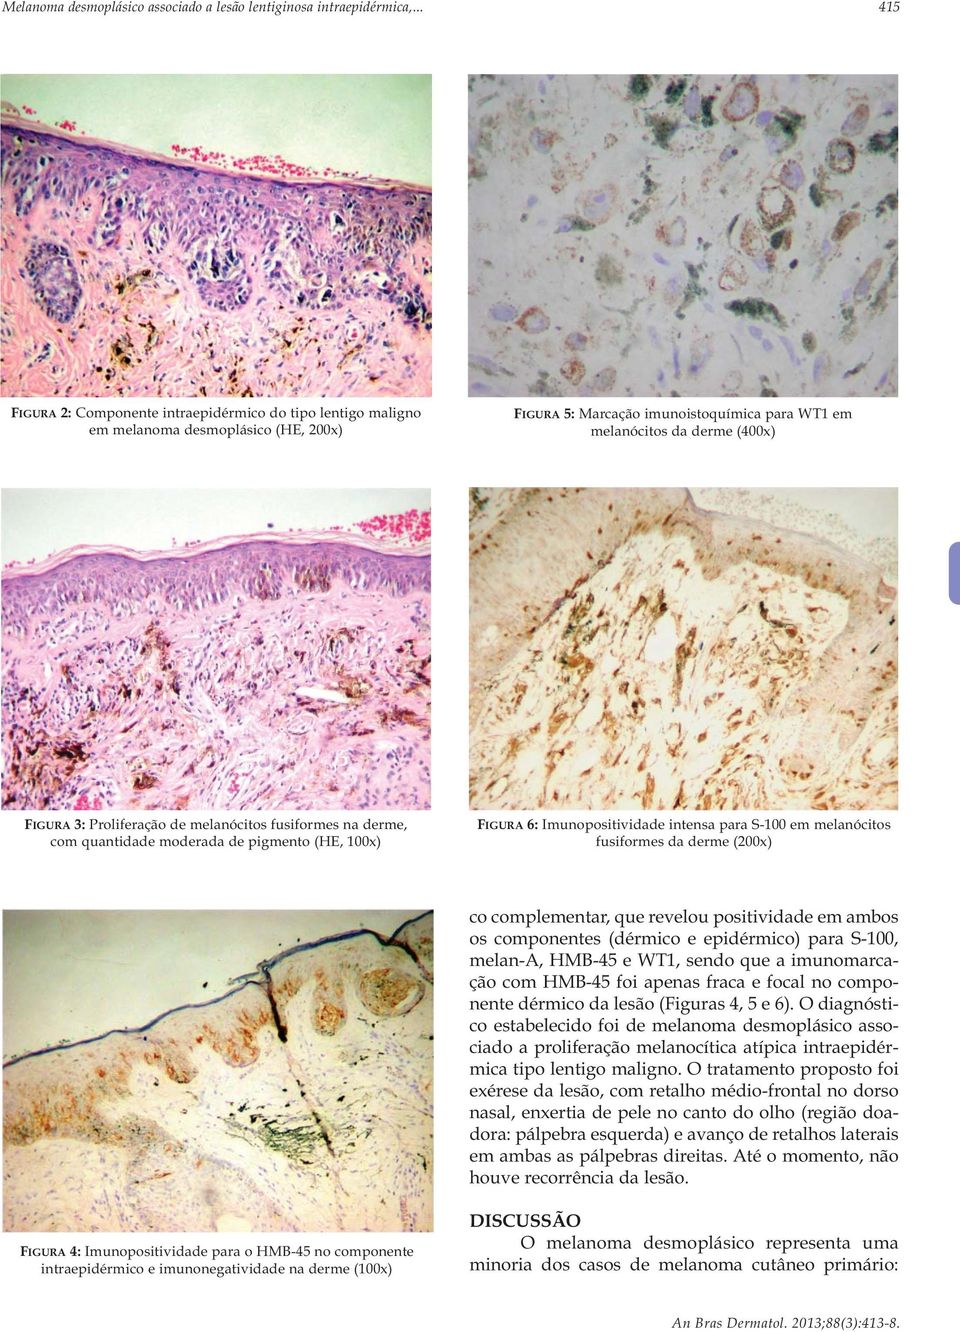 Proliferação de melanócitos fusiformes na derme, com quantidade moderada de pigmento (HE, 100x) FIGURA 6: Imunopositividade intensa para S-100 em melanócitos fusiformes da derme (200x) co